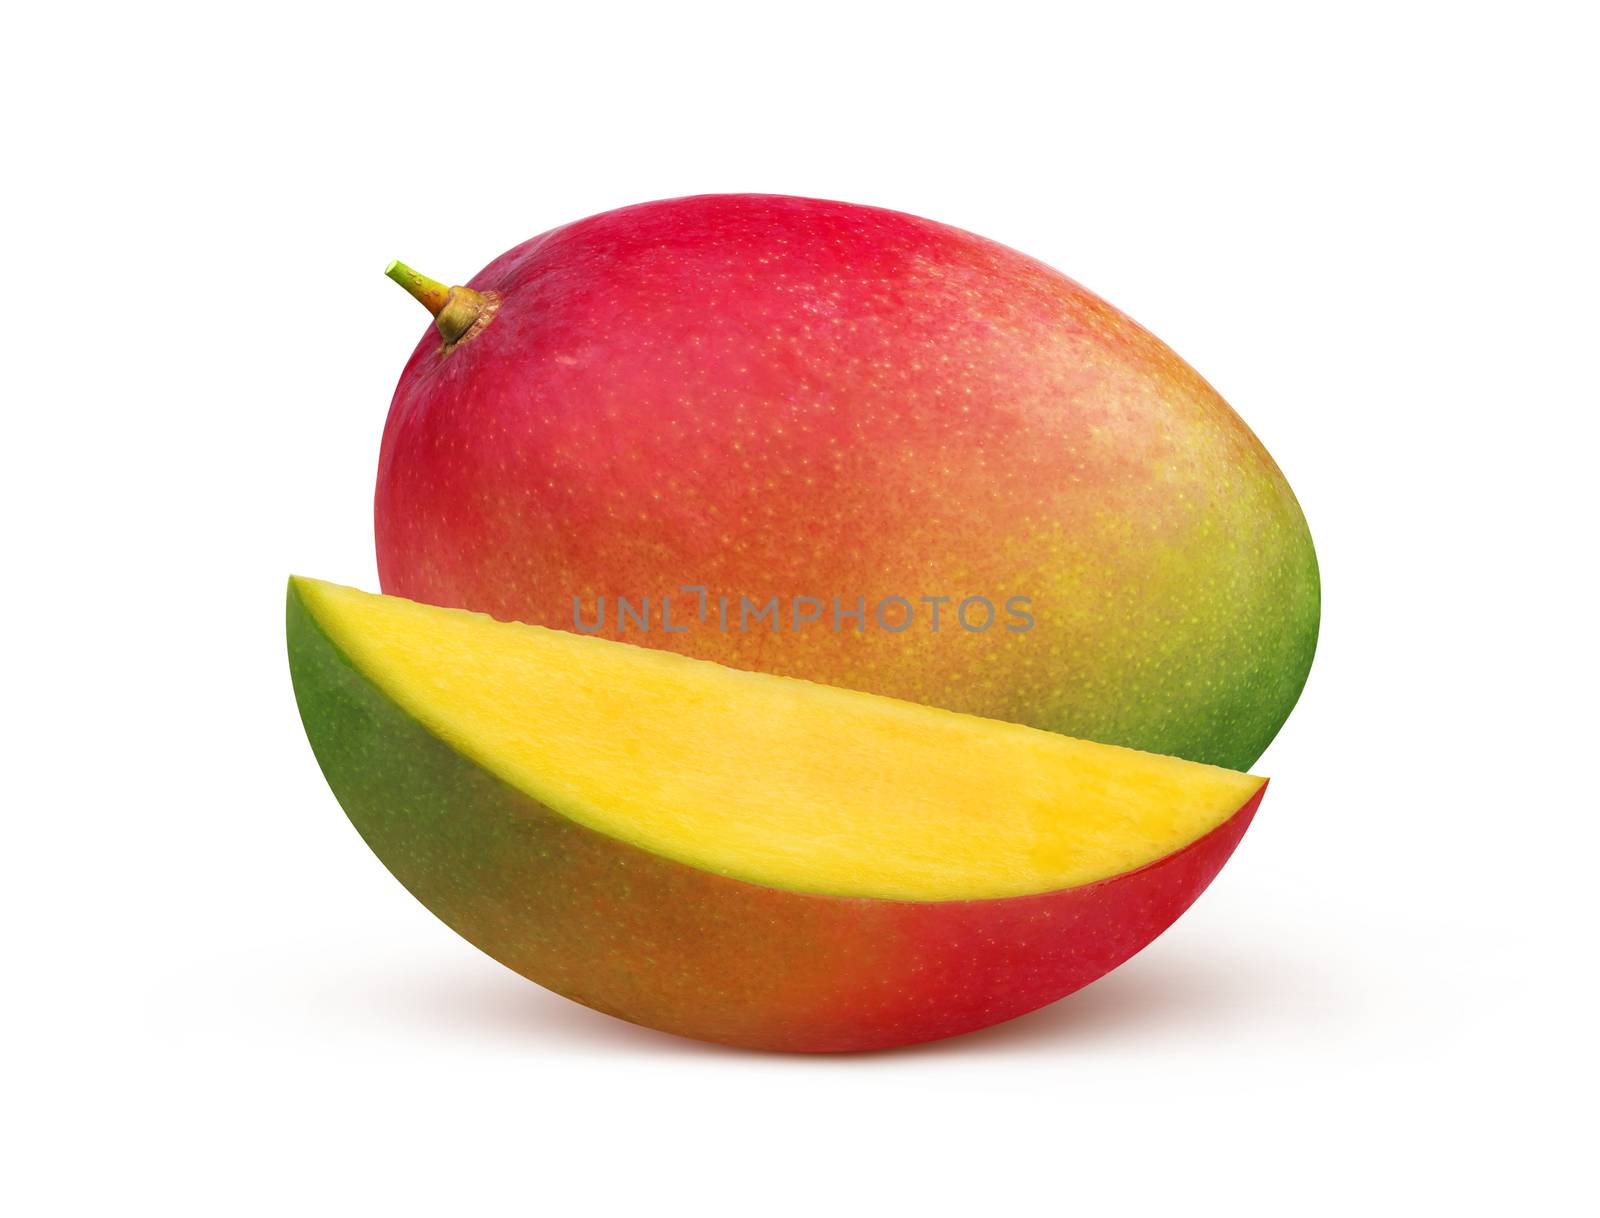 Mango fruit isolated on white background by xamtiw